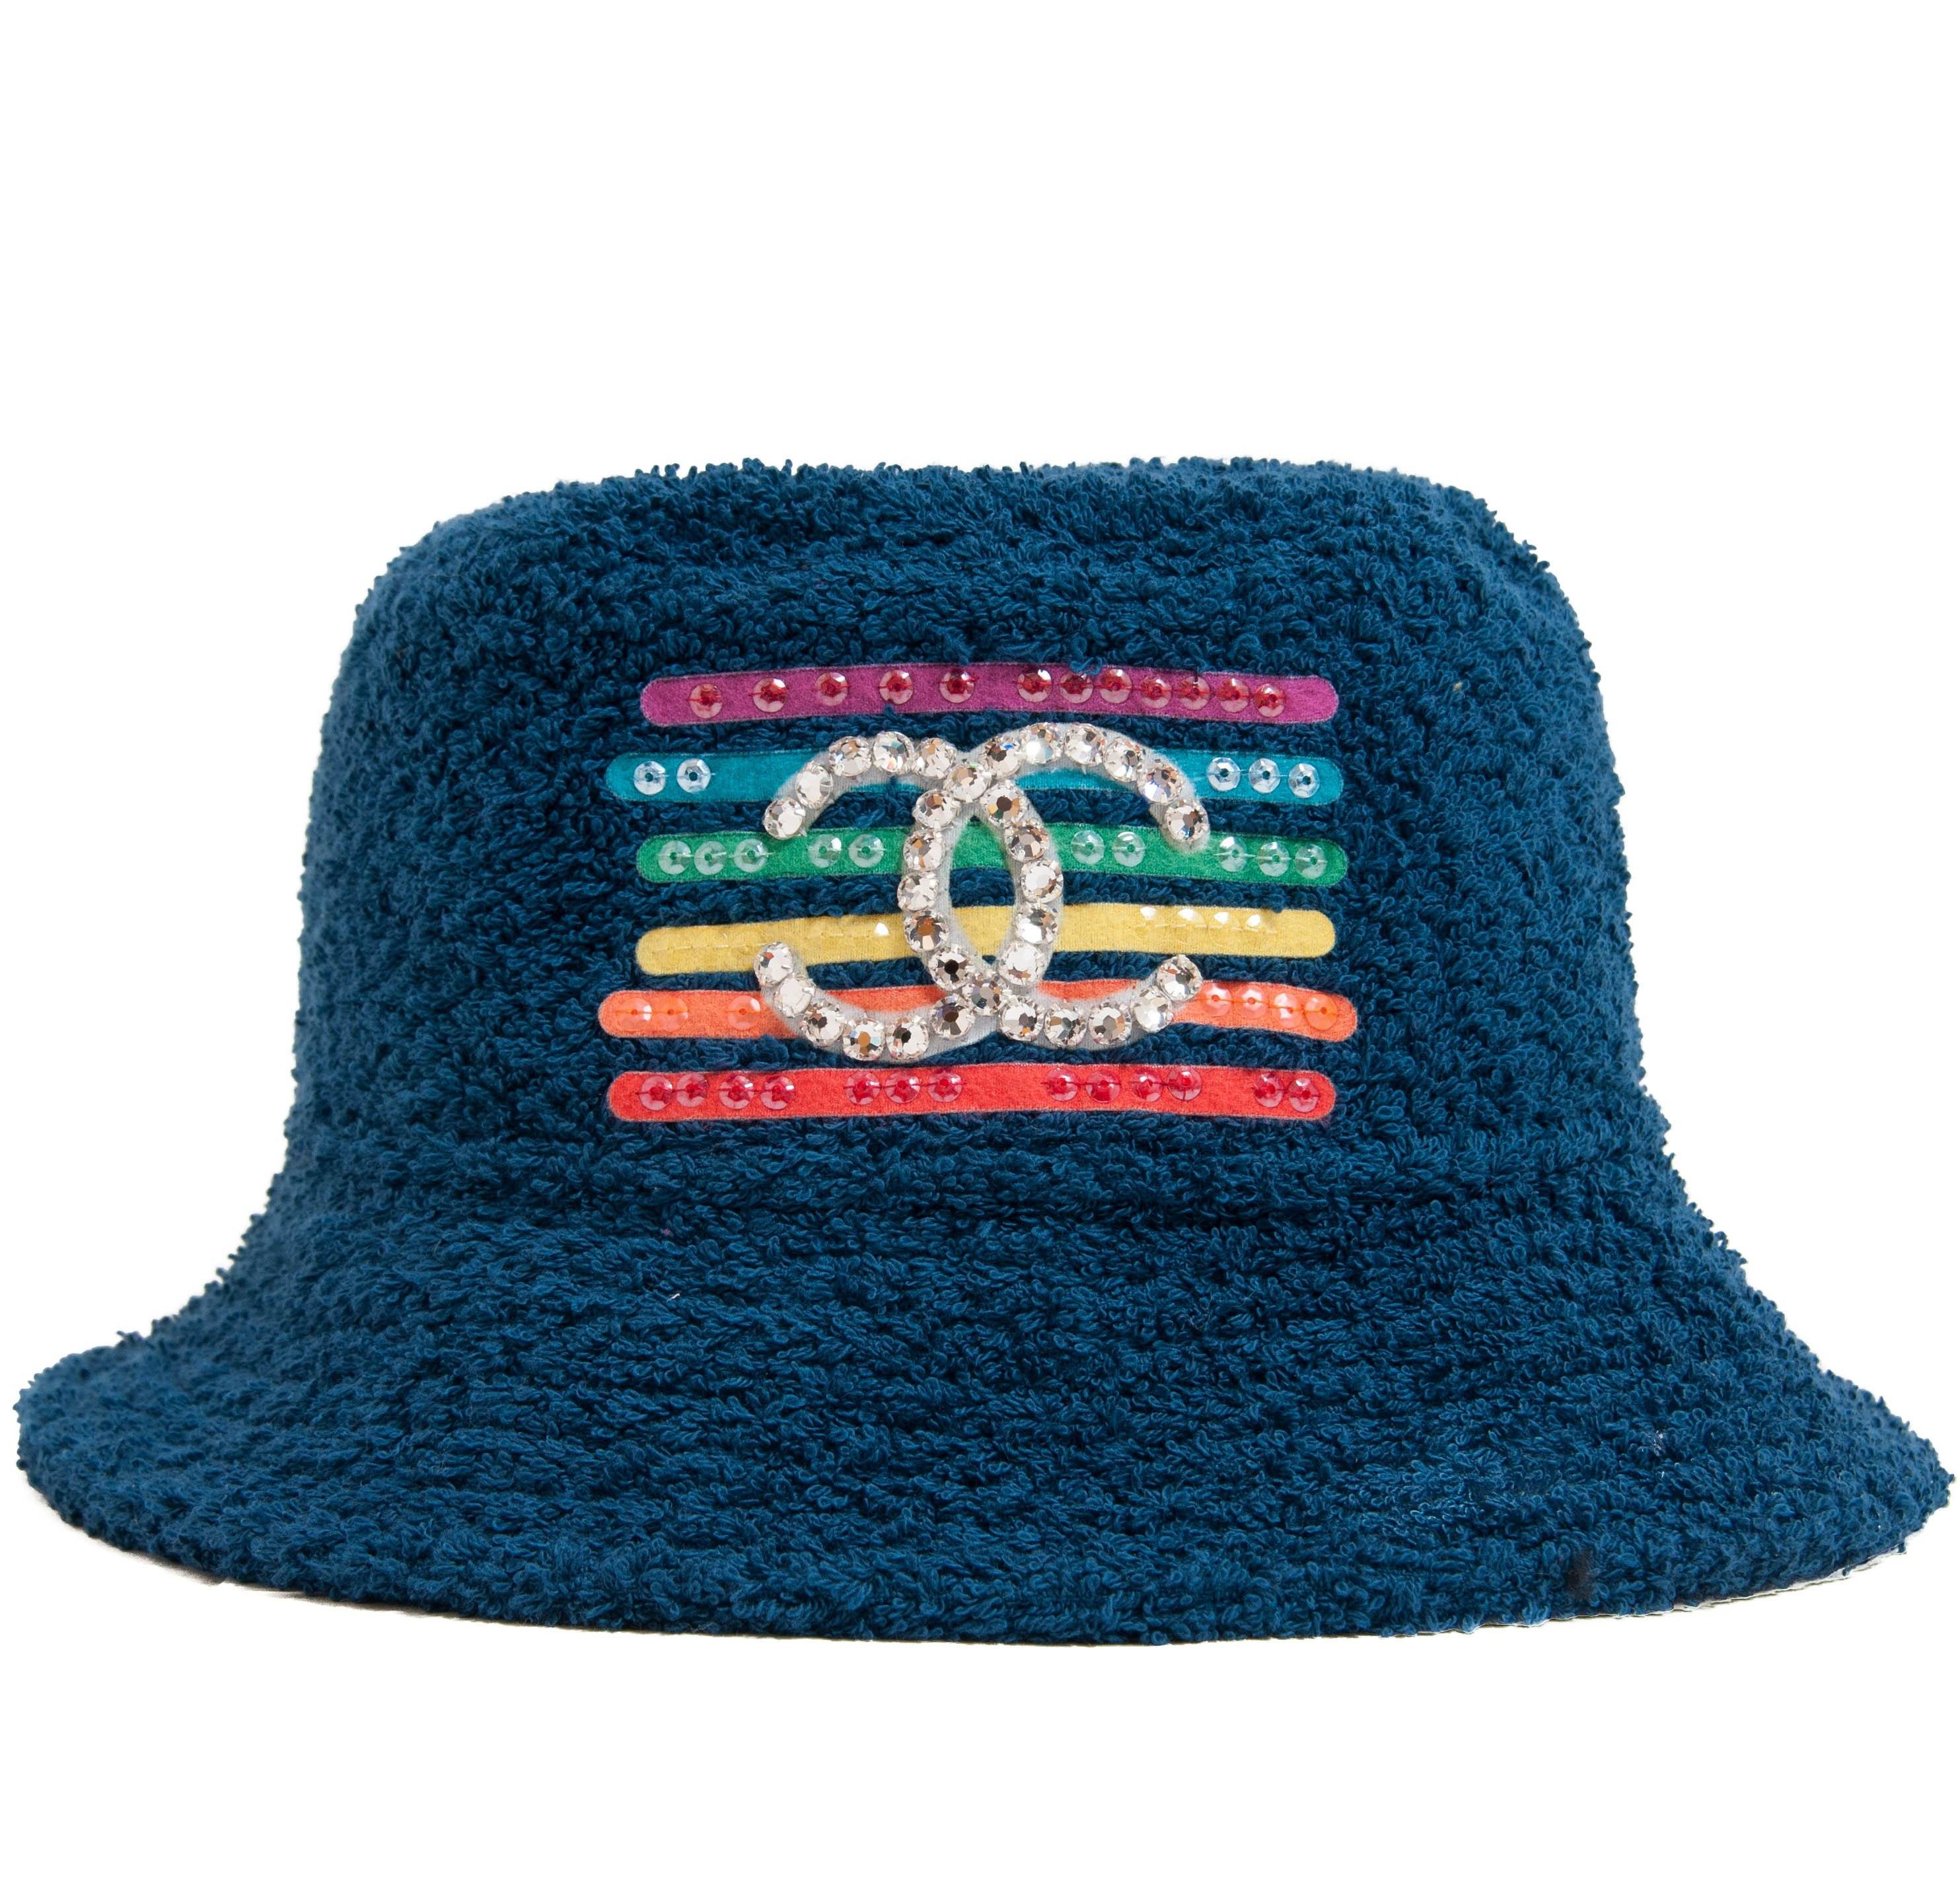 Chanel x Pharell Bucket Hat – THE-ECHELON